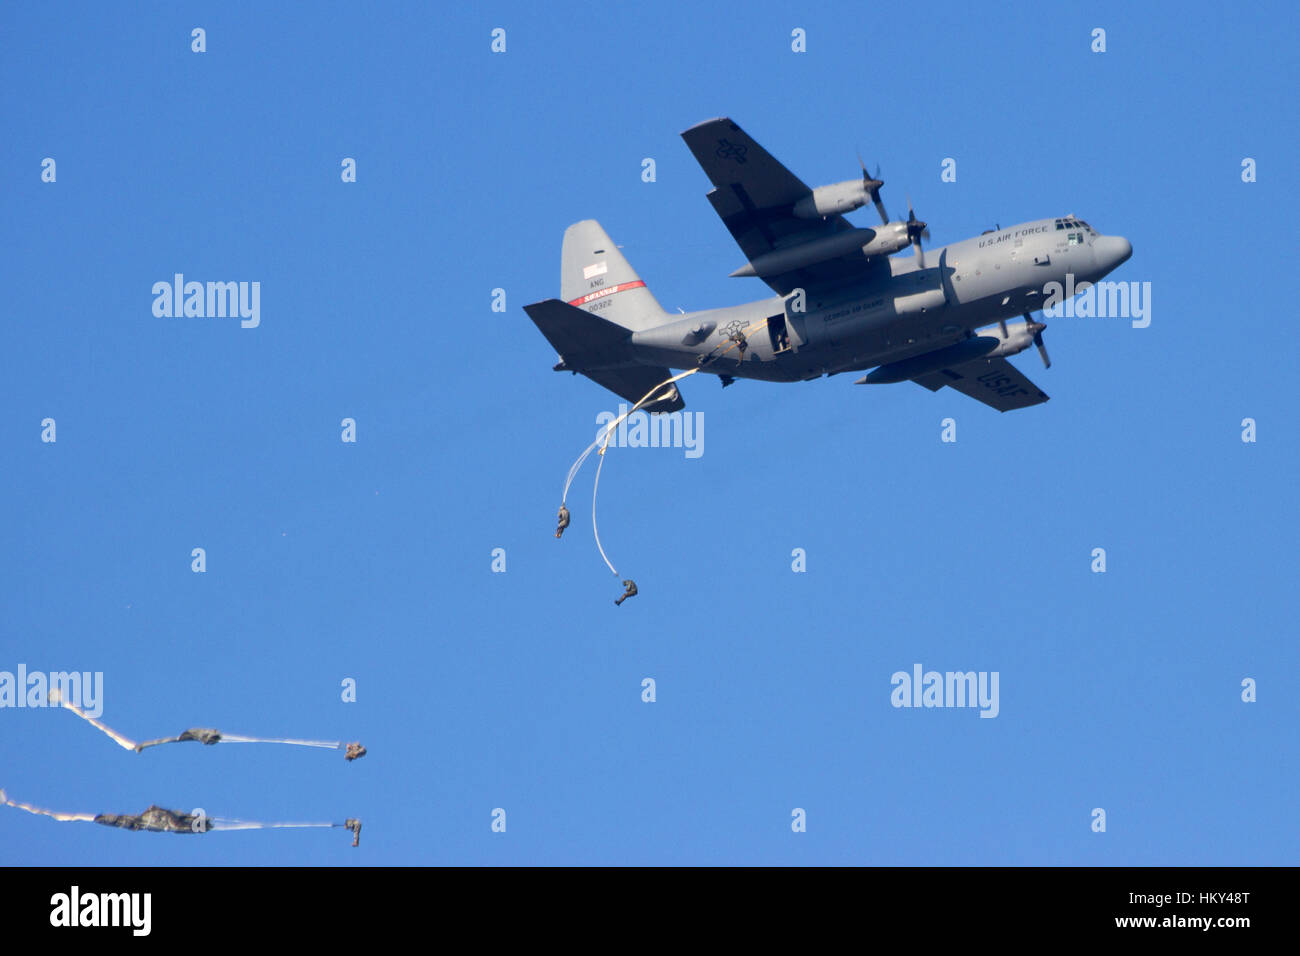 GROESBEEK, Paesi Bassi - Sep 18: UN USAF C-130 Hercules è far cadere i paracadutisti dall'ottantaduesima Airborne Division presso l'operazione Market Garden palazzo Foto Stock